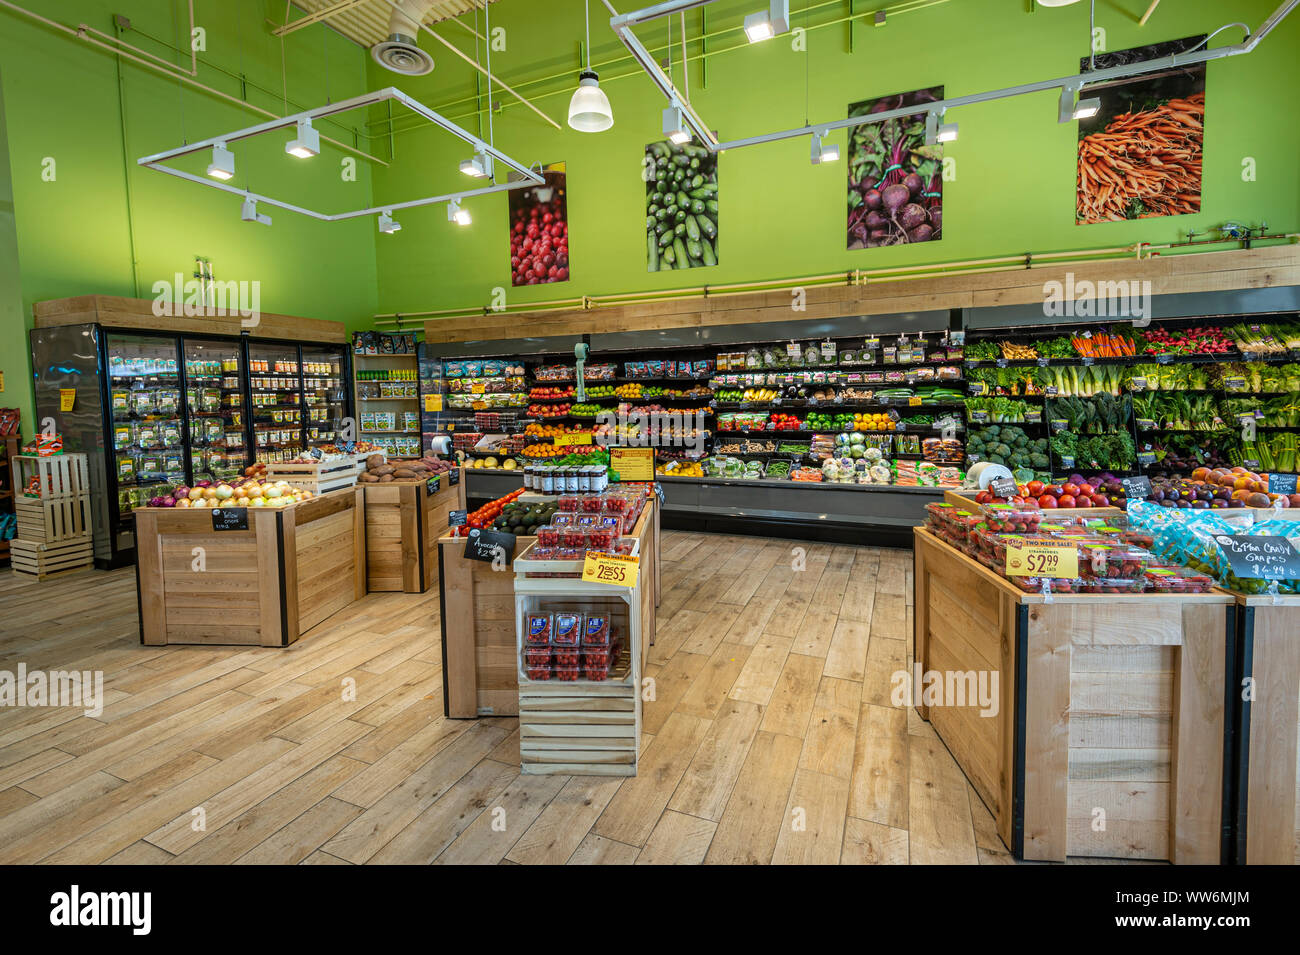 25 Super Store Interior Design Photos ideas in 2023  grocery store design,  store design, store design interior